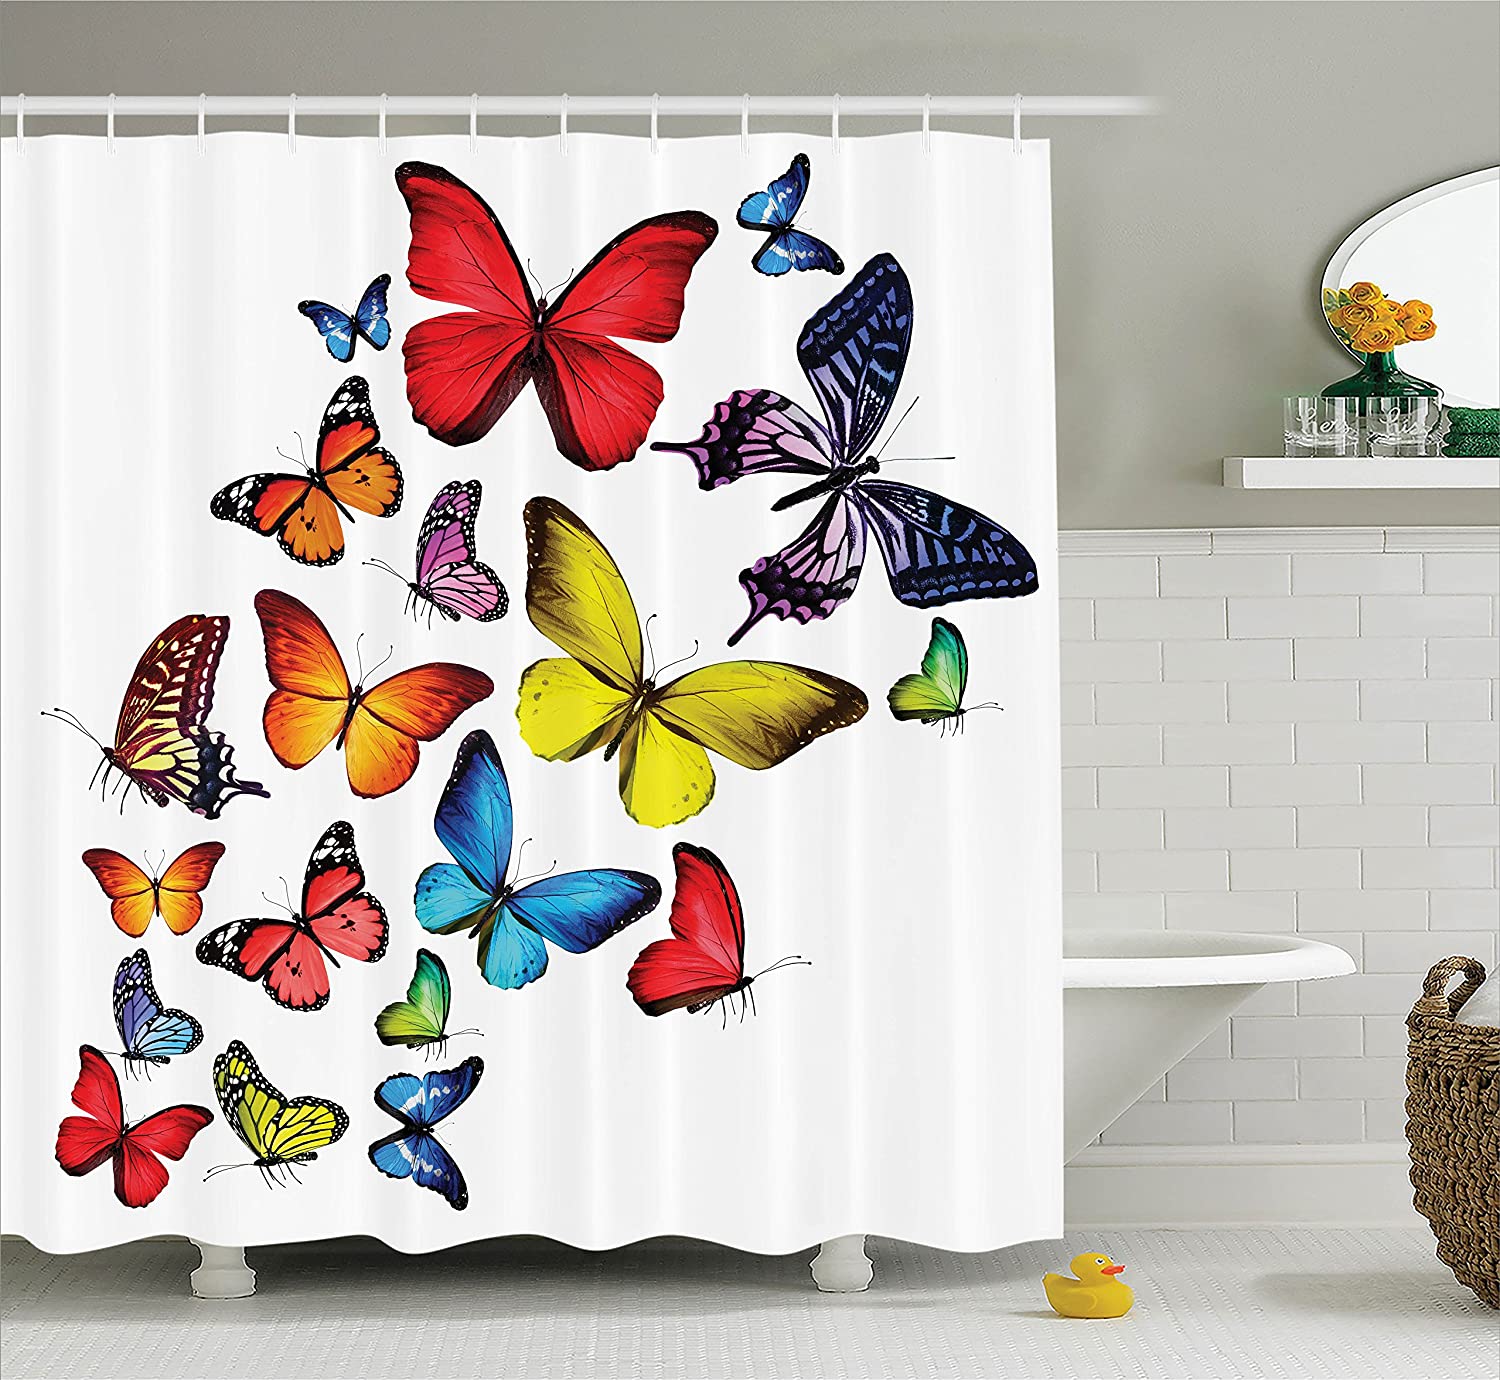 2 Butterflies Decoration Shower Curtain Many Different Butterflies Romance